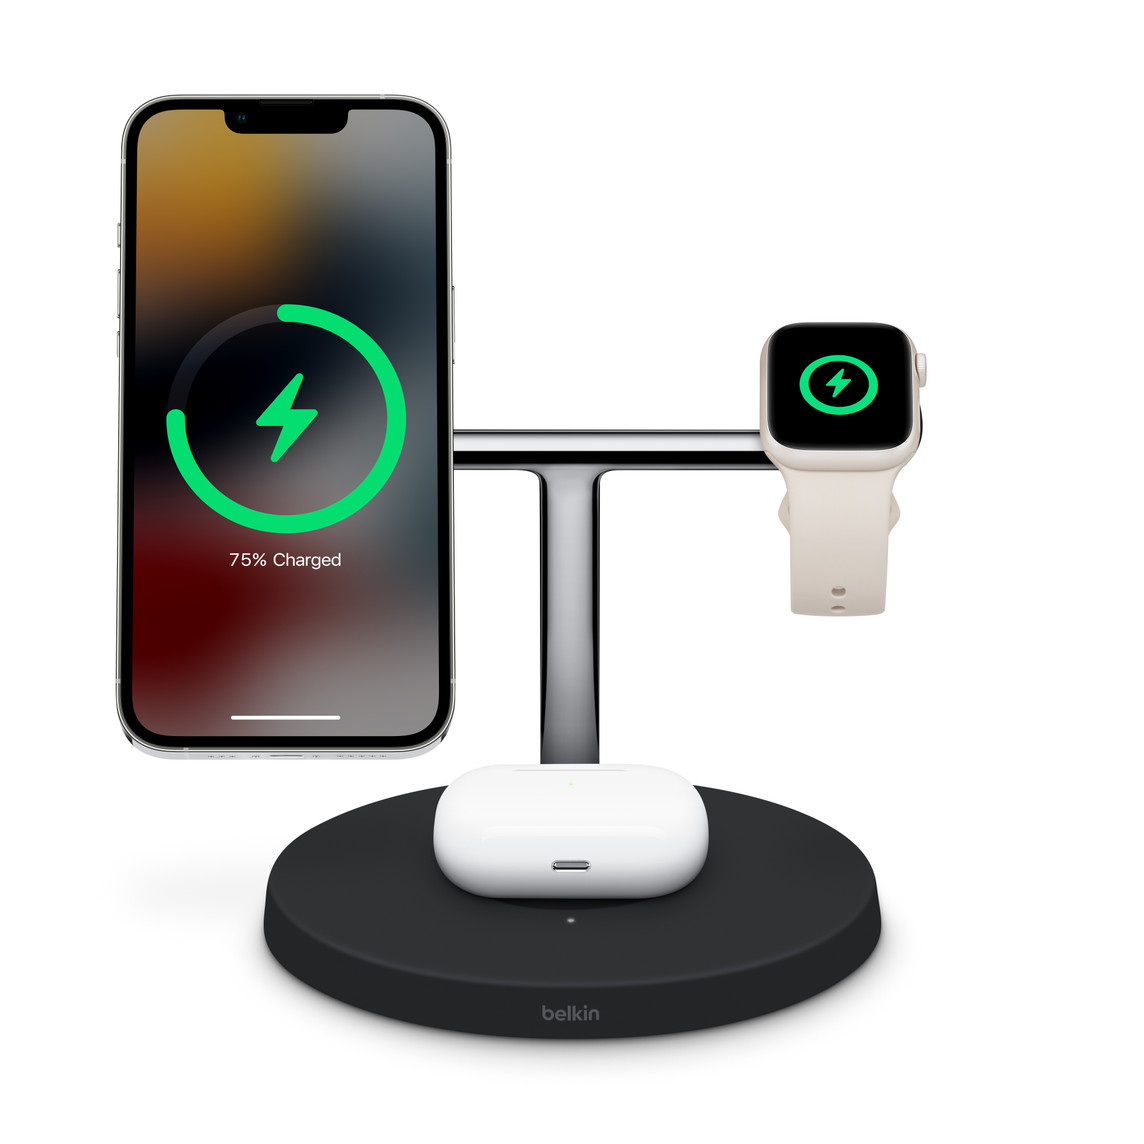 La station de recharge sans fil Boost Charge Pro 3-en-1 avec MagSafe de Belkin permet de recharger simultanément un iPhone, une Apple Watch et un étui de recharge sans fil pour AirPods.